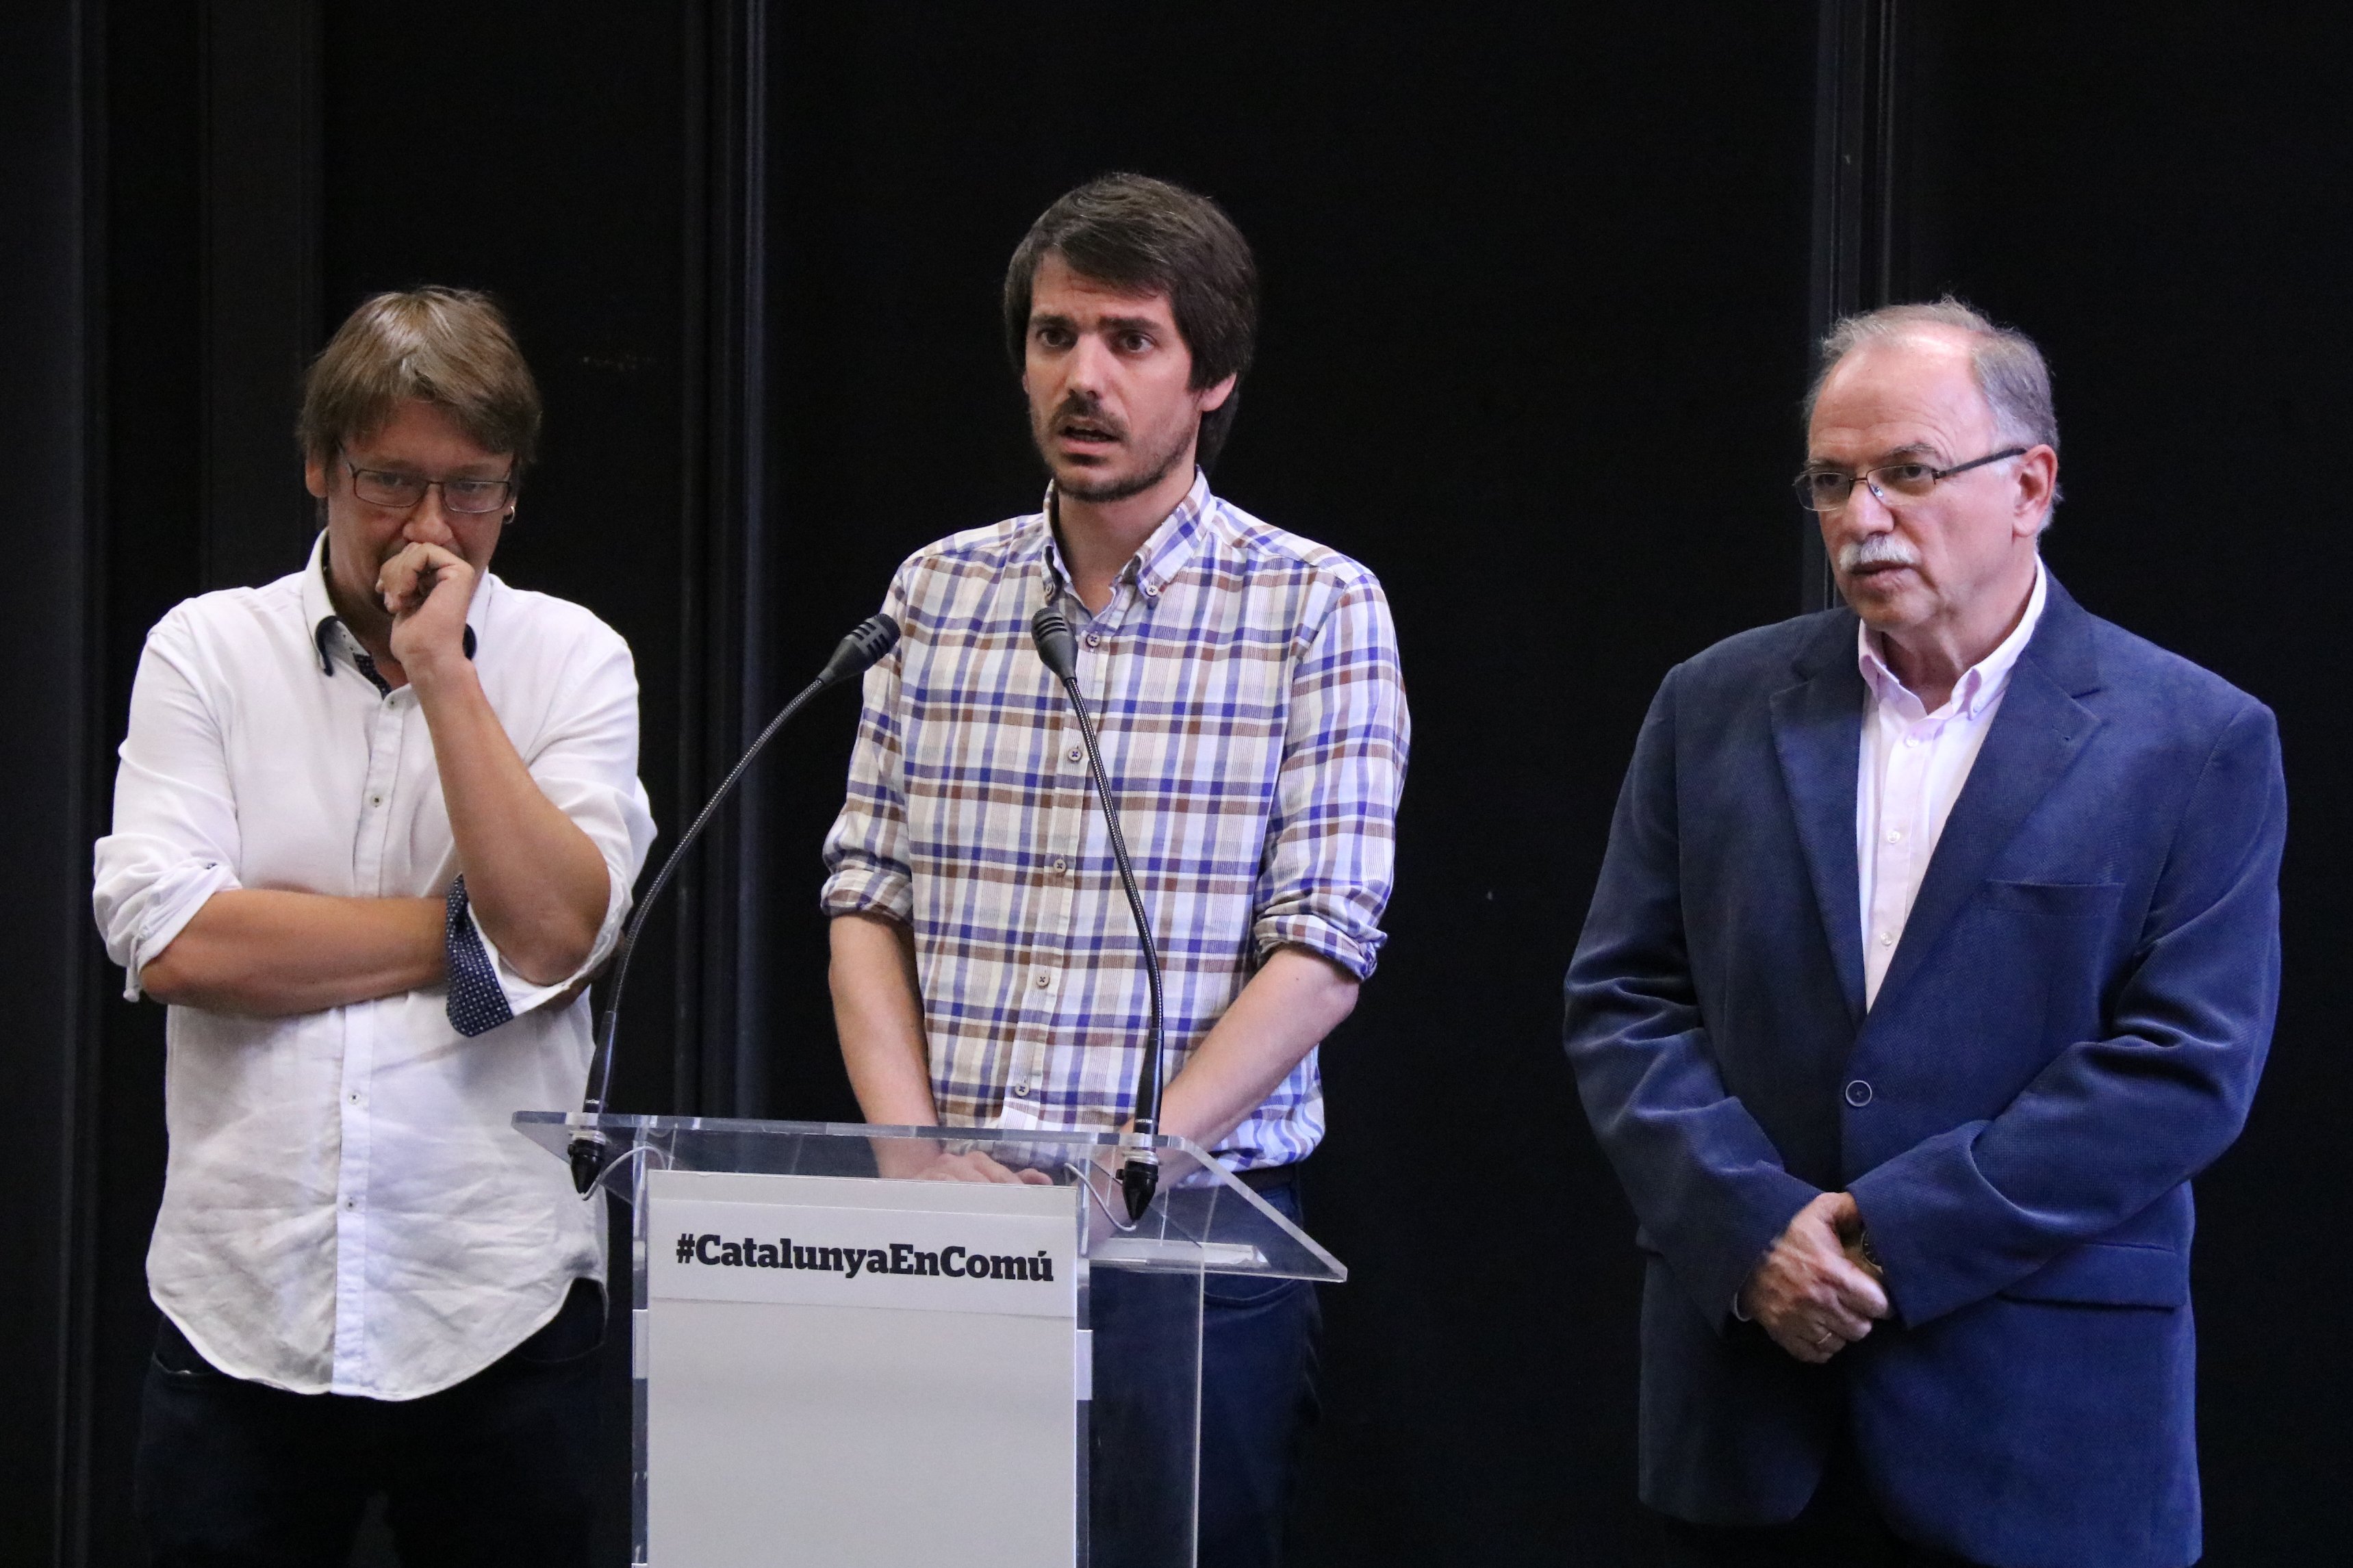 ICV reclama formar gobierno: "Catalunya no merece este espectáculo"